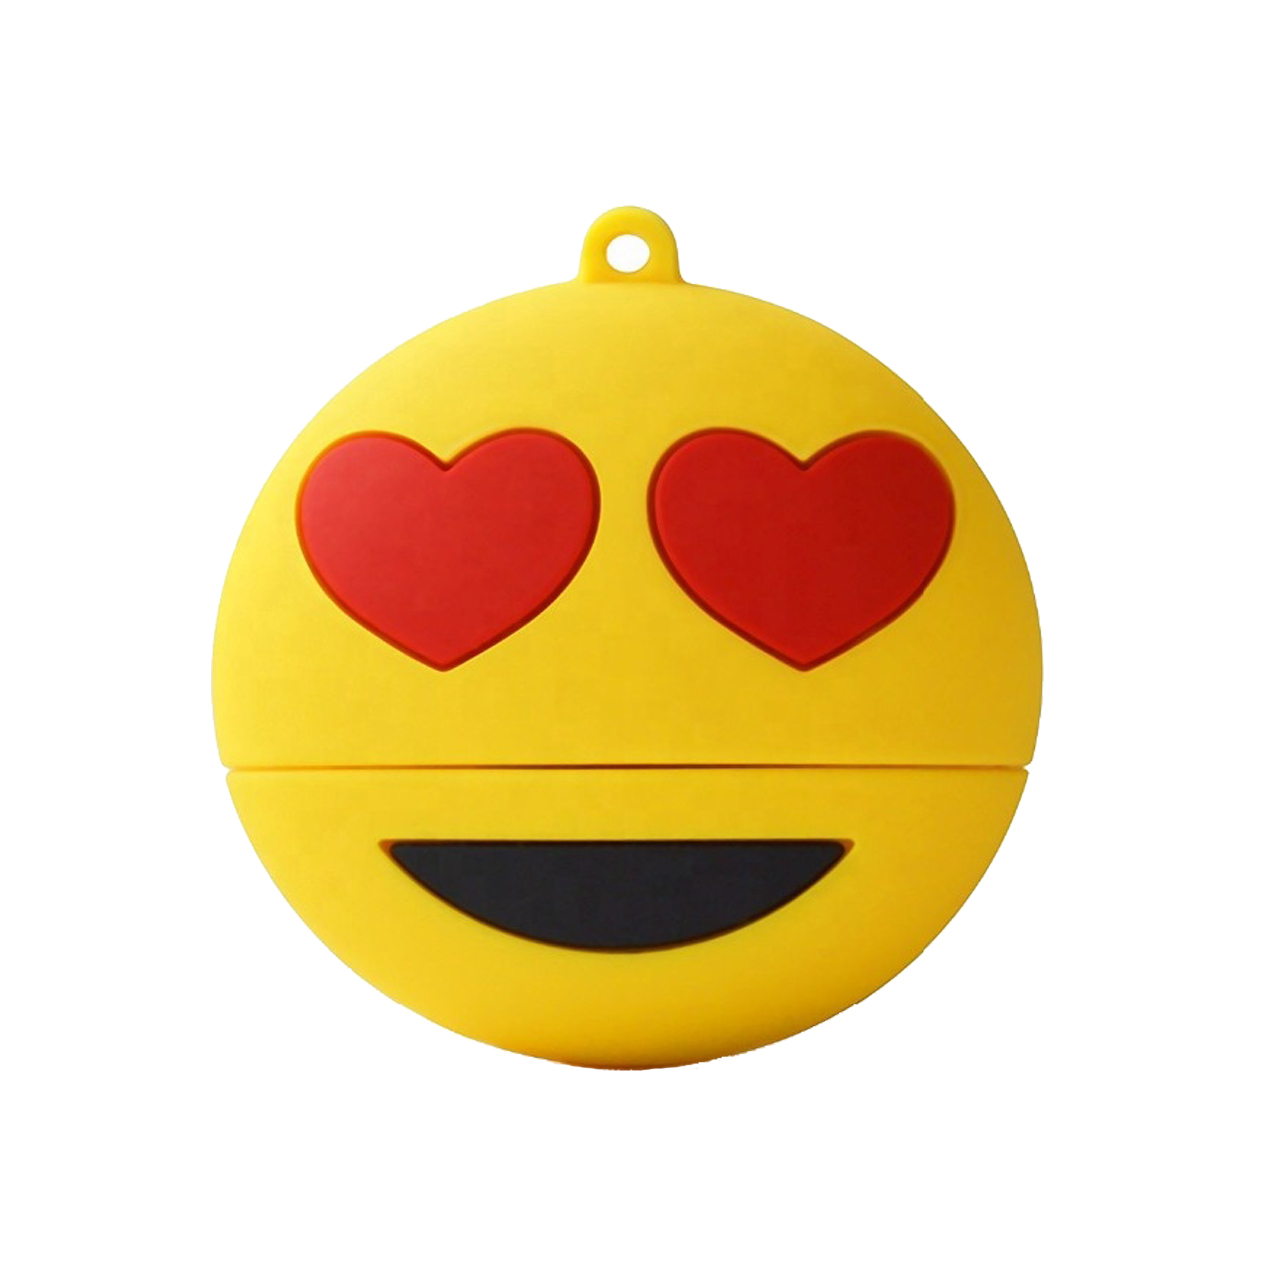 فلش مموری طرح ایموجی عشق مدل Ul-Emoji03 ظرفیت 128 گیگابایت